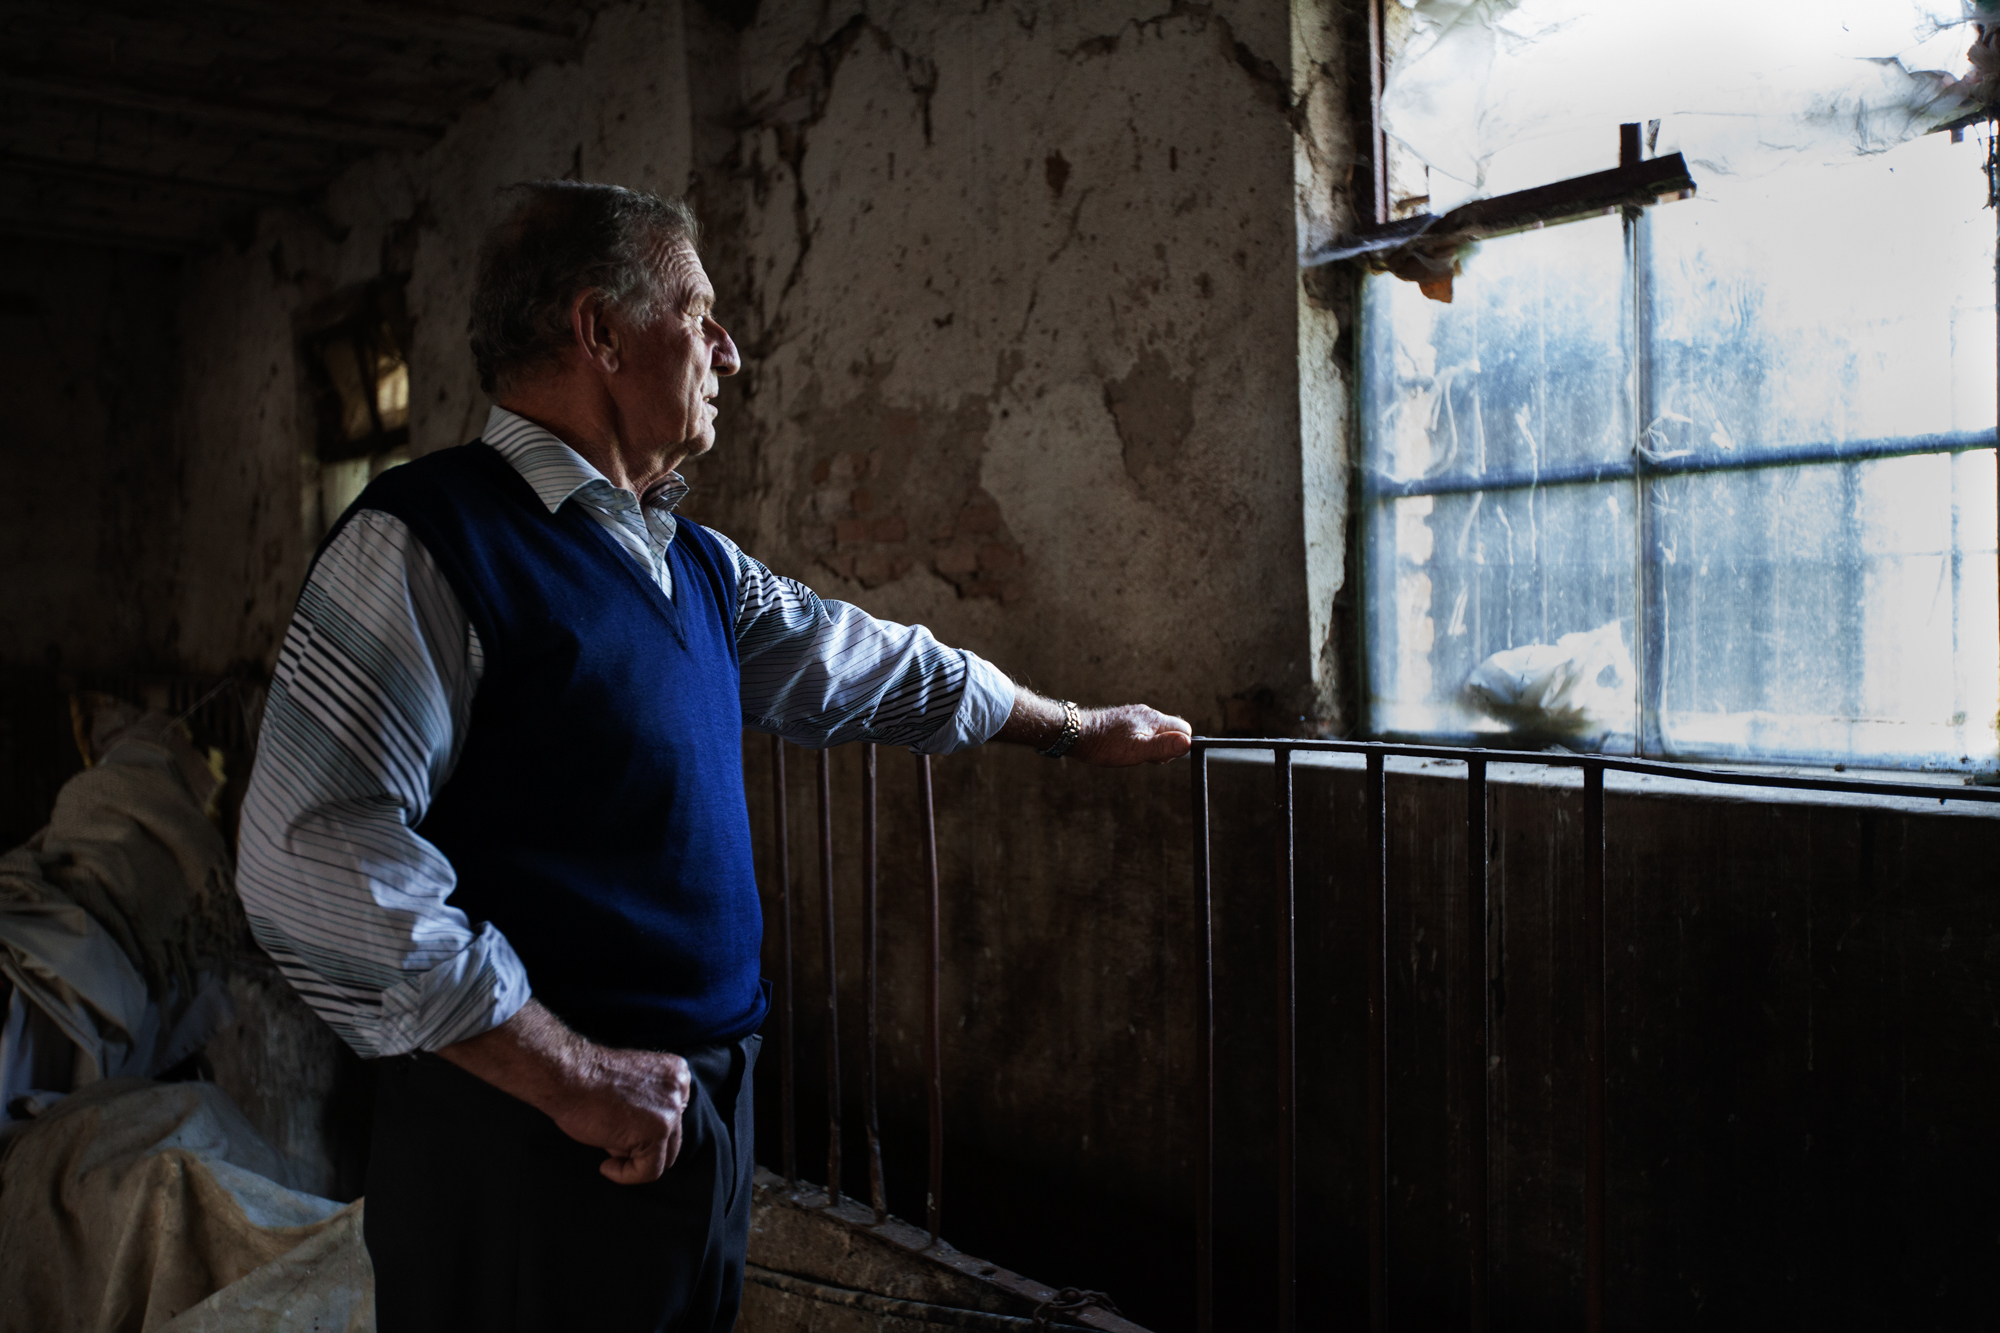  Pierino Antonioli, contadino bresciano di 70 anni abita nell'area inquinata dal PCB prodotto dall'industria chimica Caffaro. Nel 2001 ha dovuto abbattere i suoi capi di bestiame a causa dell'alta percentuale di diossina.Brescia / Italia. Ottobre 201